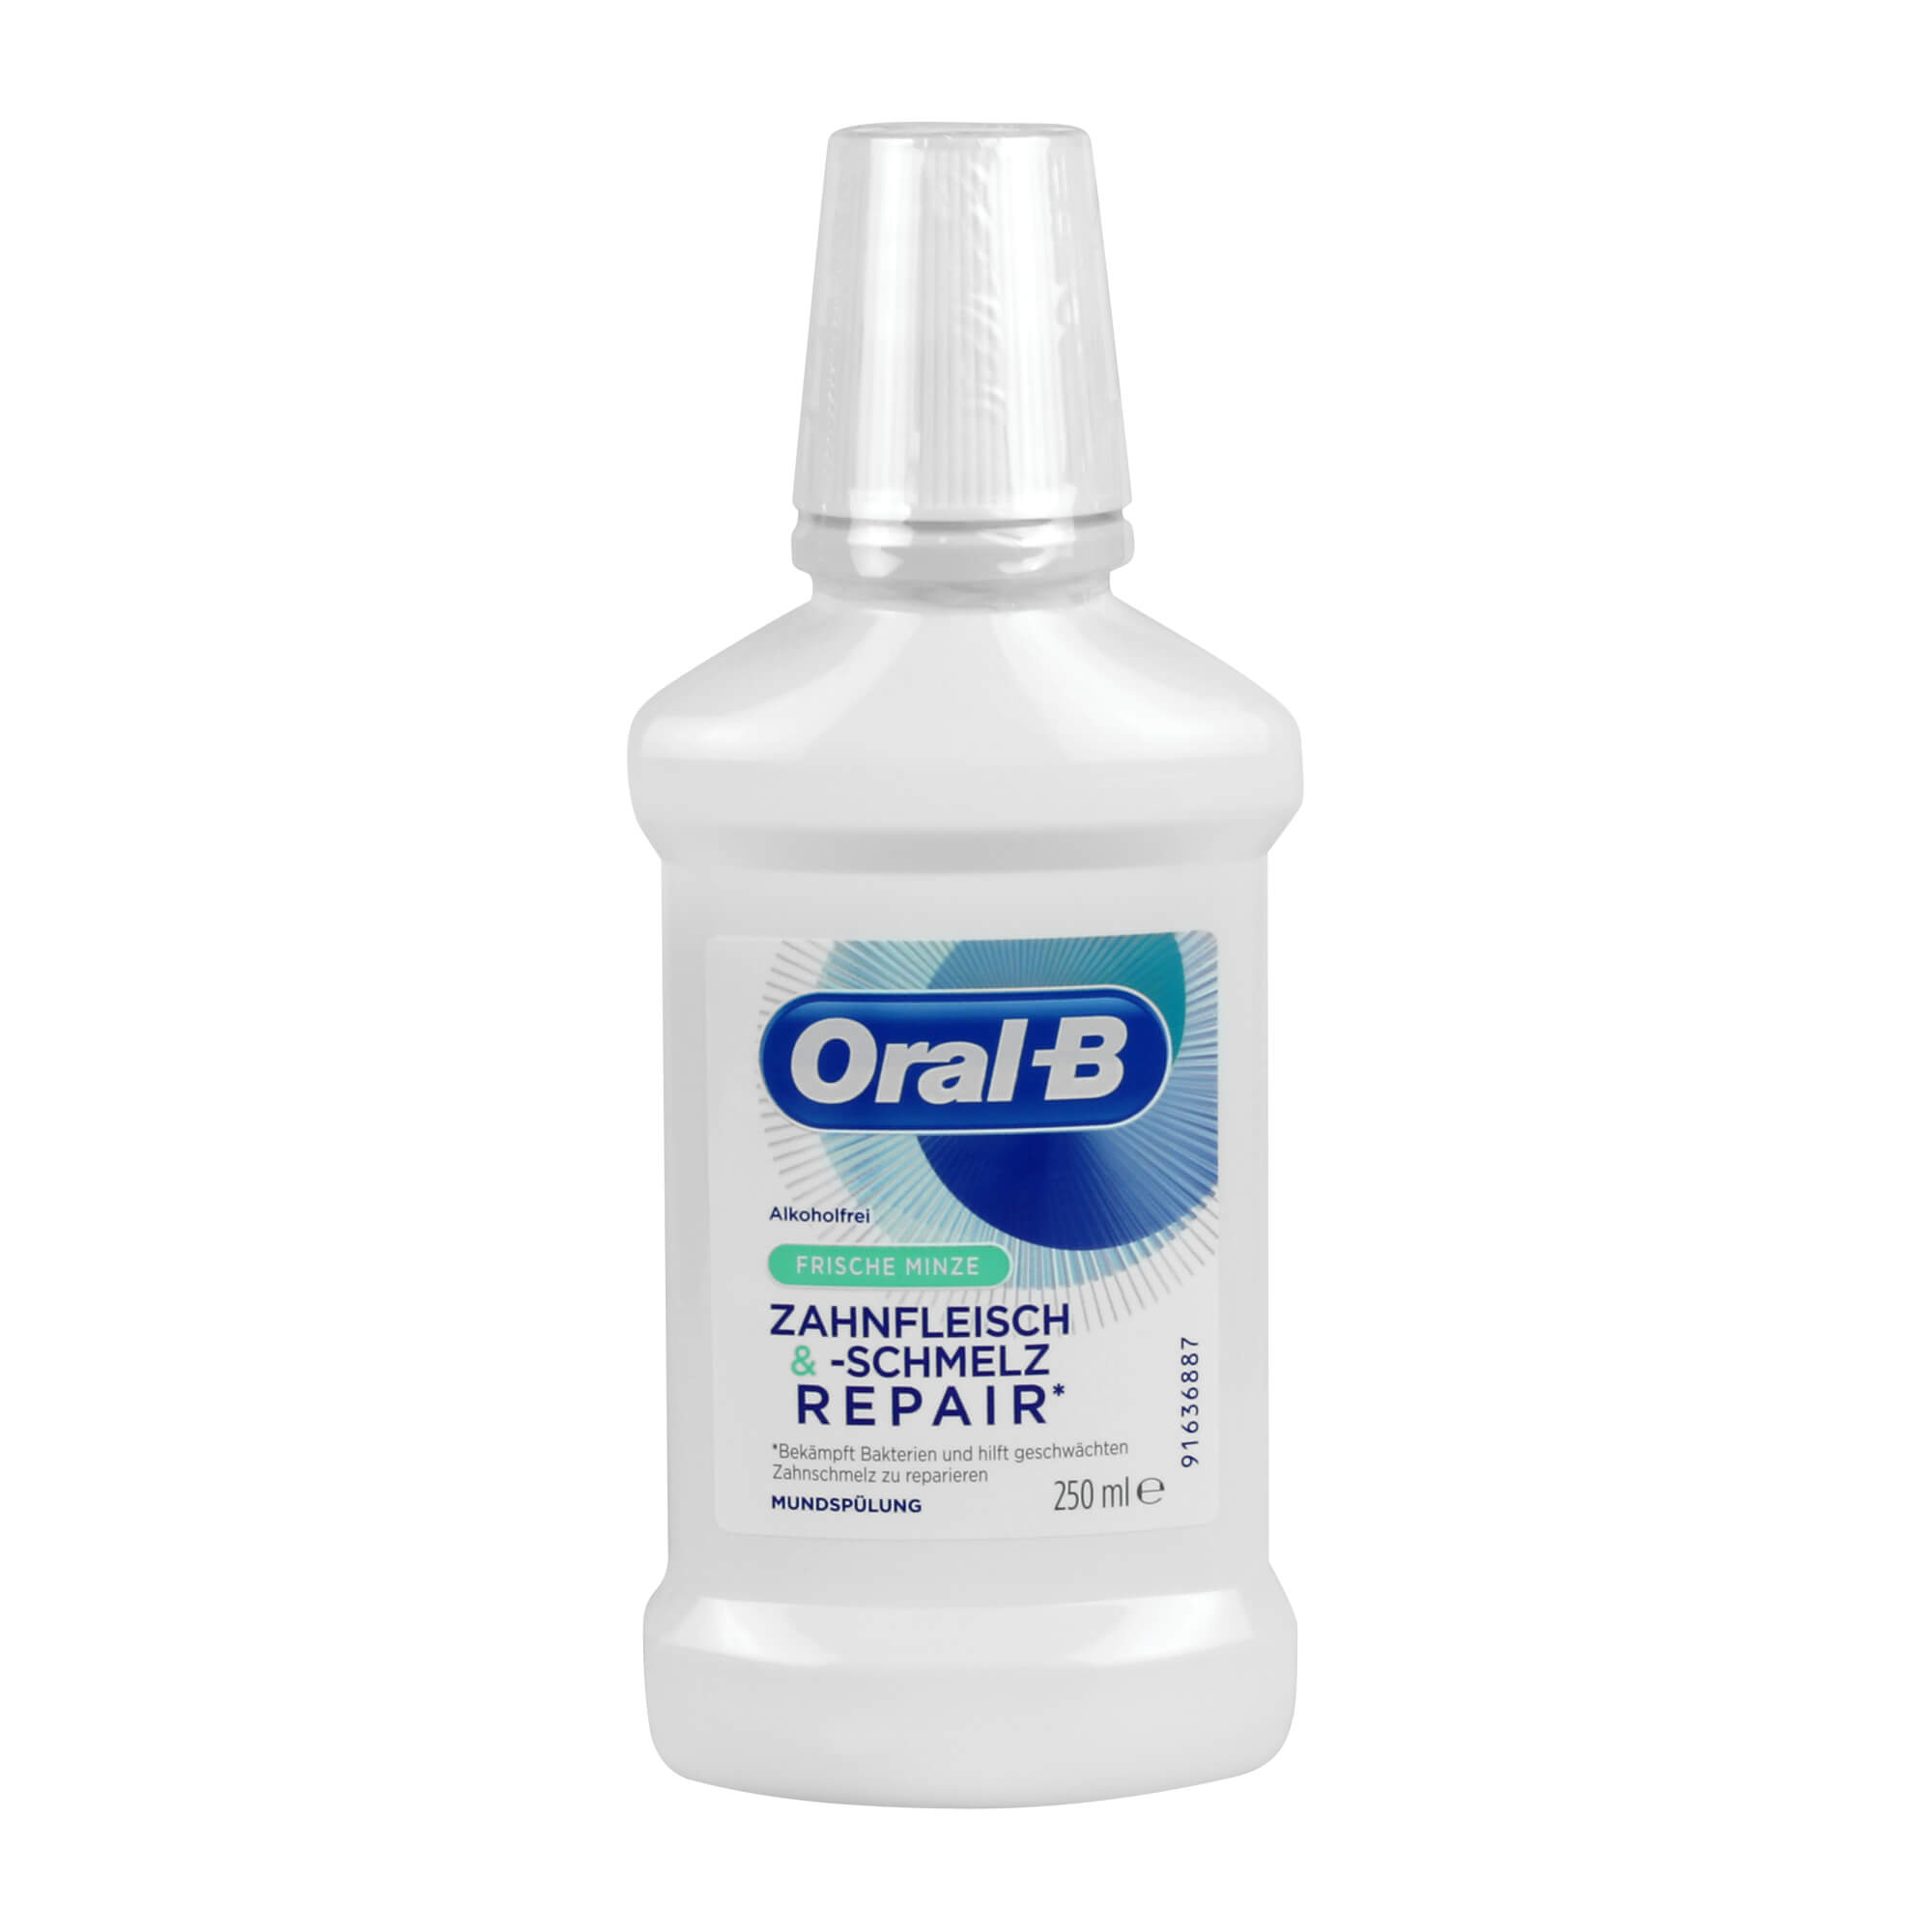 Oral-B Zahnfleisch- und schmelz Repair Minze Mundspülung